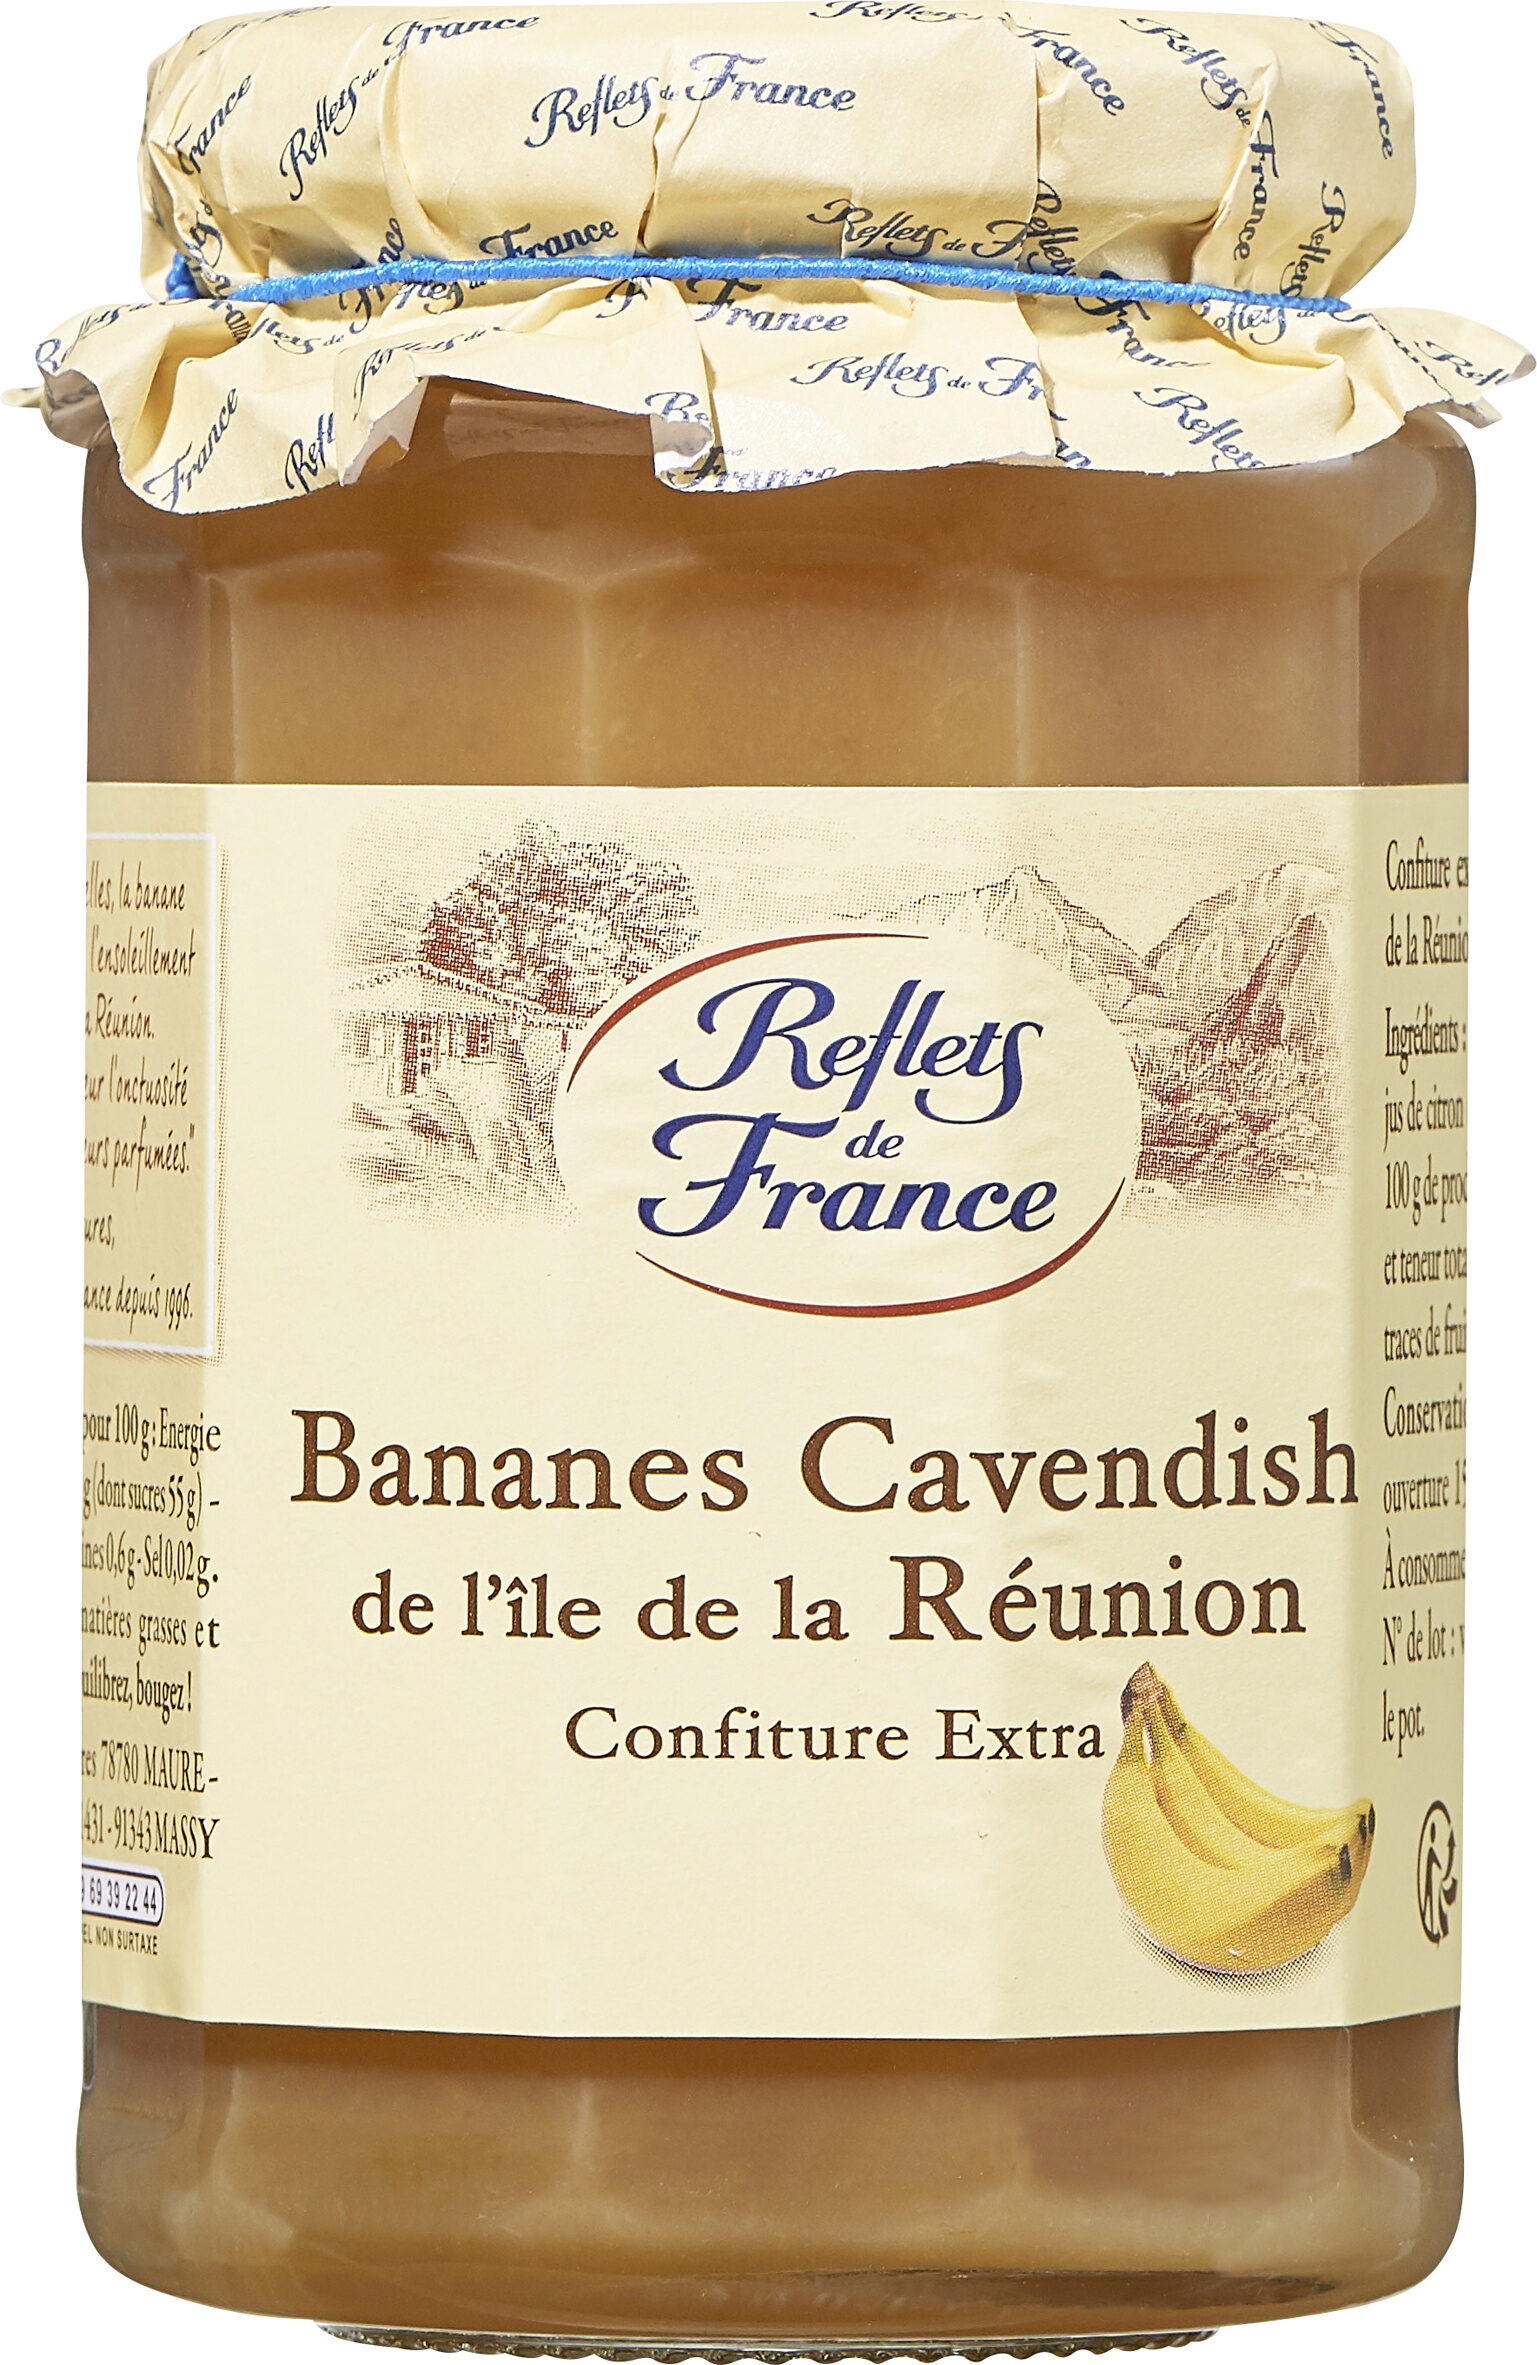 Bananes Cavendish de l'île de la Réunion - Confiture Extra - Producto - fr